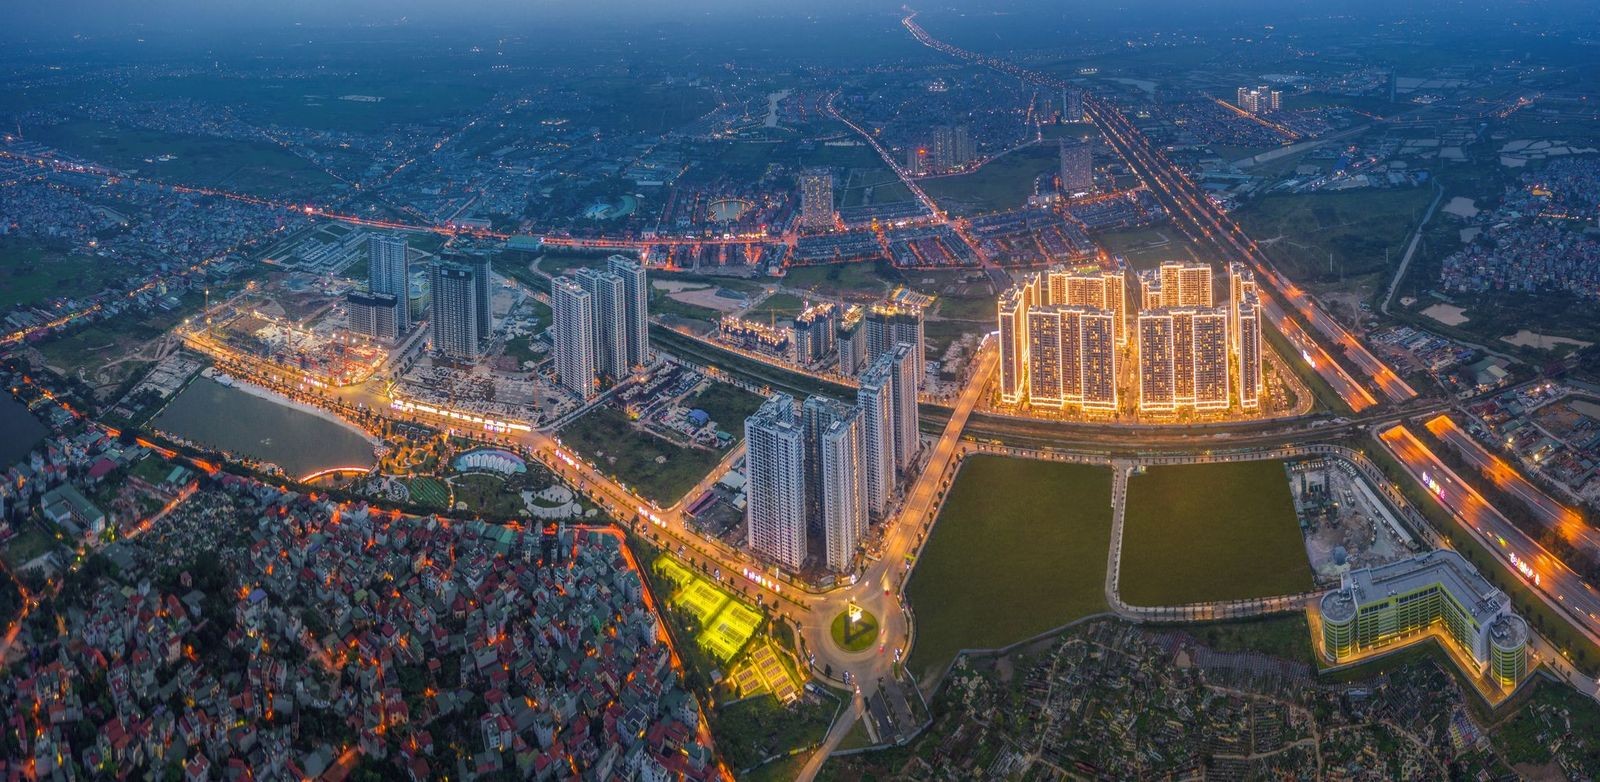 Khu vực Tây Hà Nội có hệ thống hạ tầng giao thông hiện đại với nhiều khu đô thị sầm uất nhất hiện nay